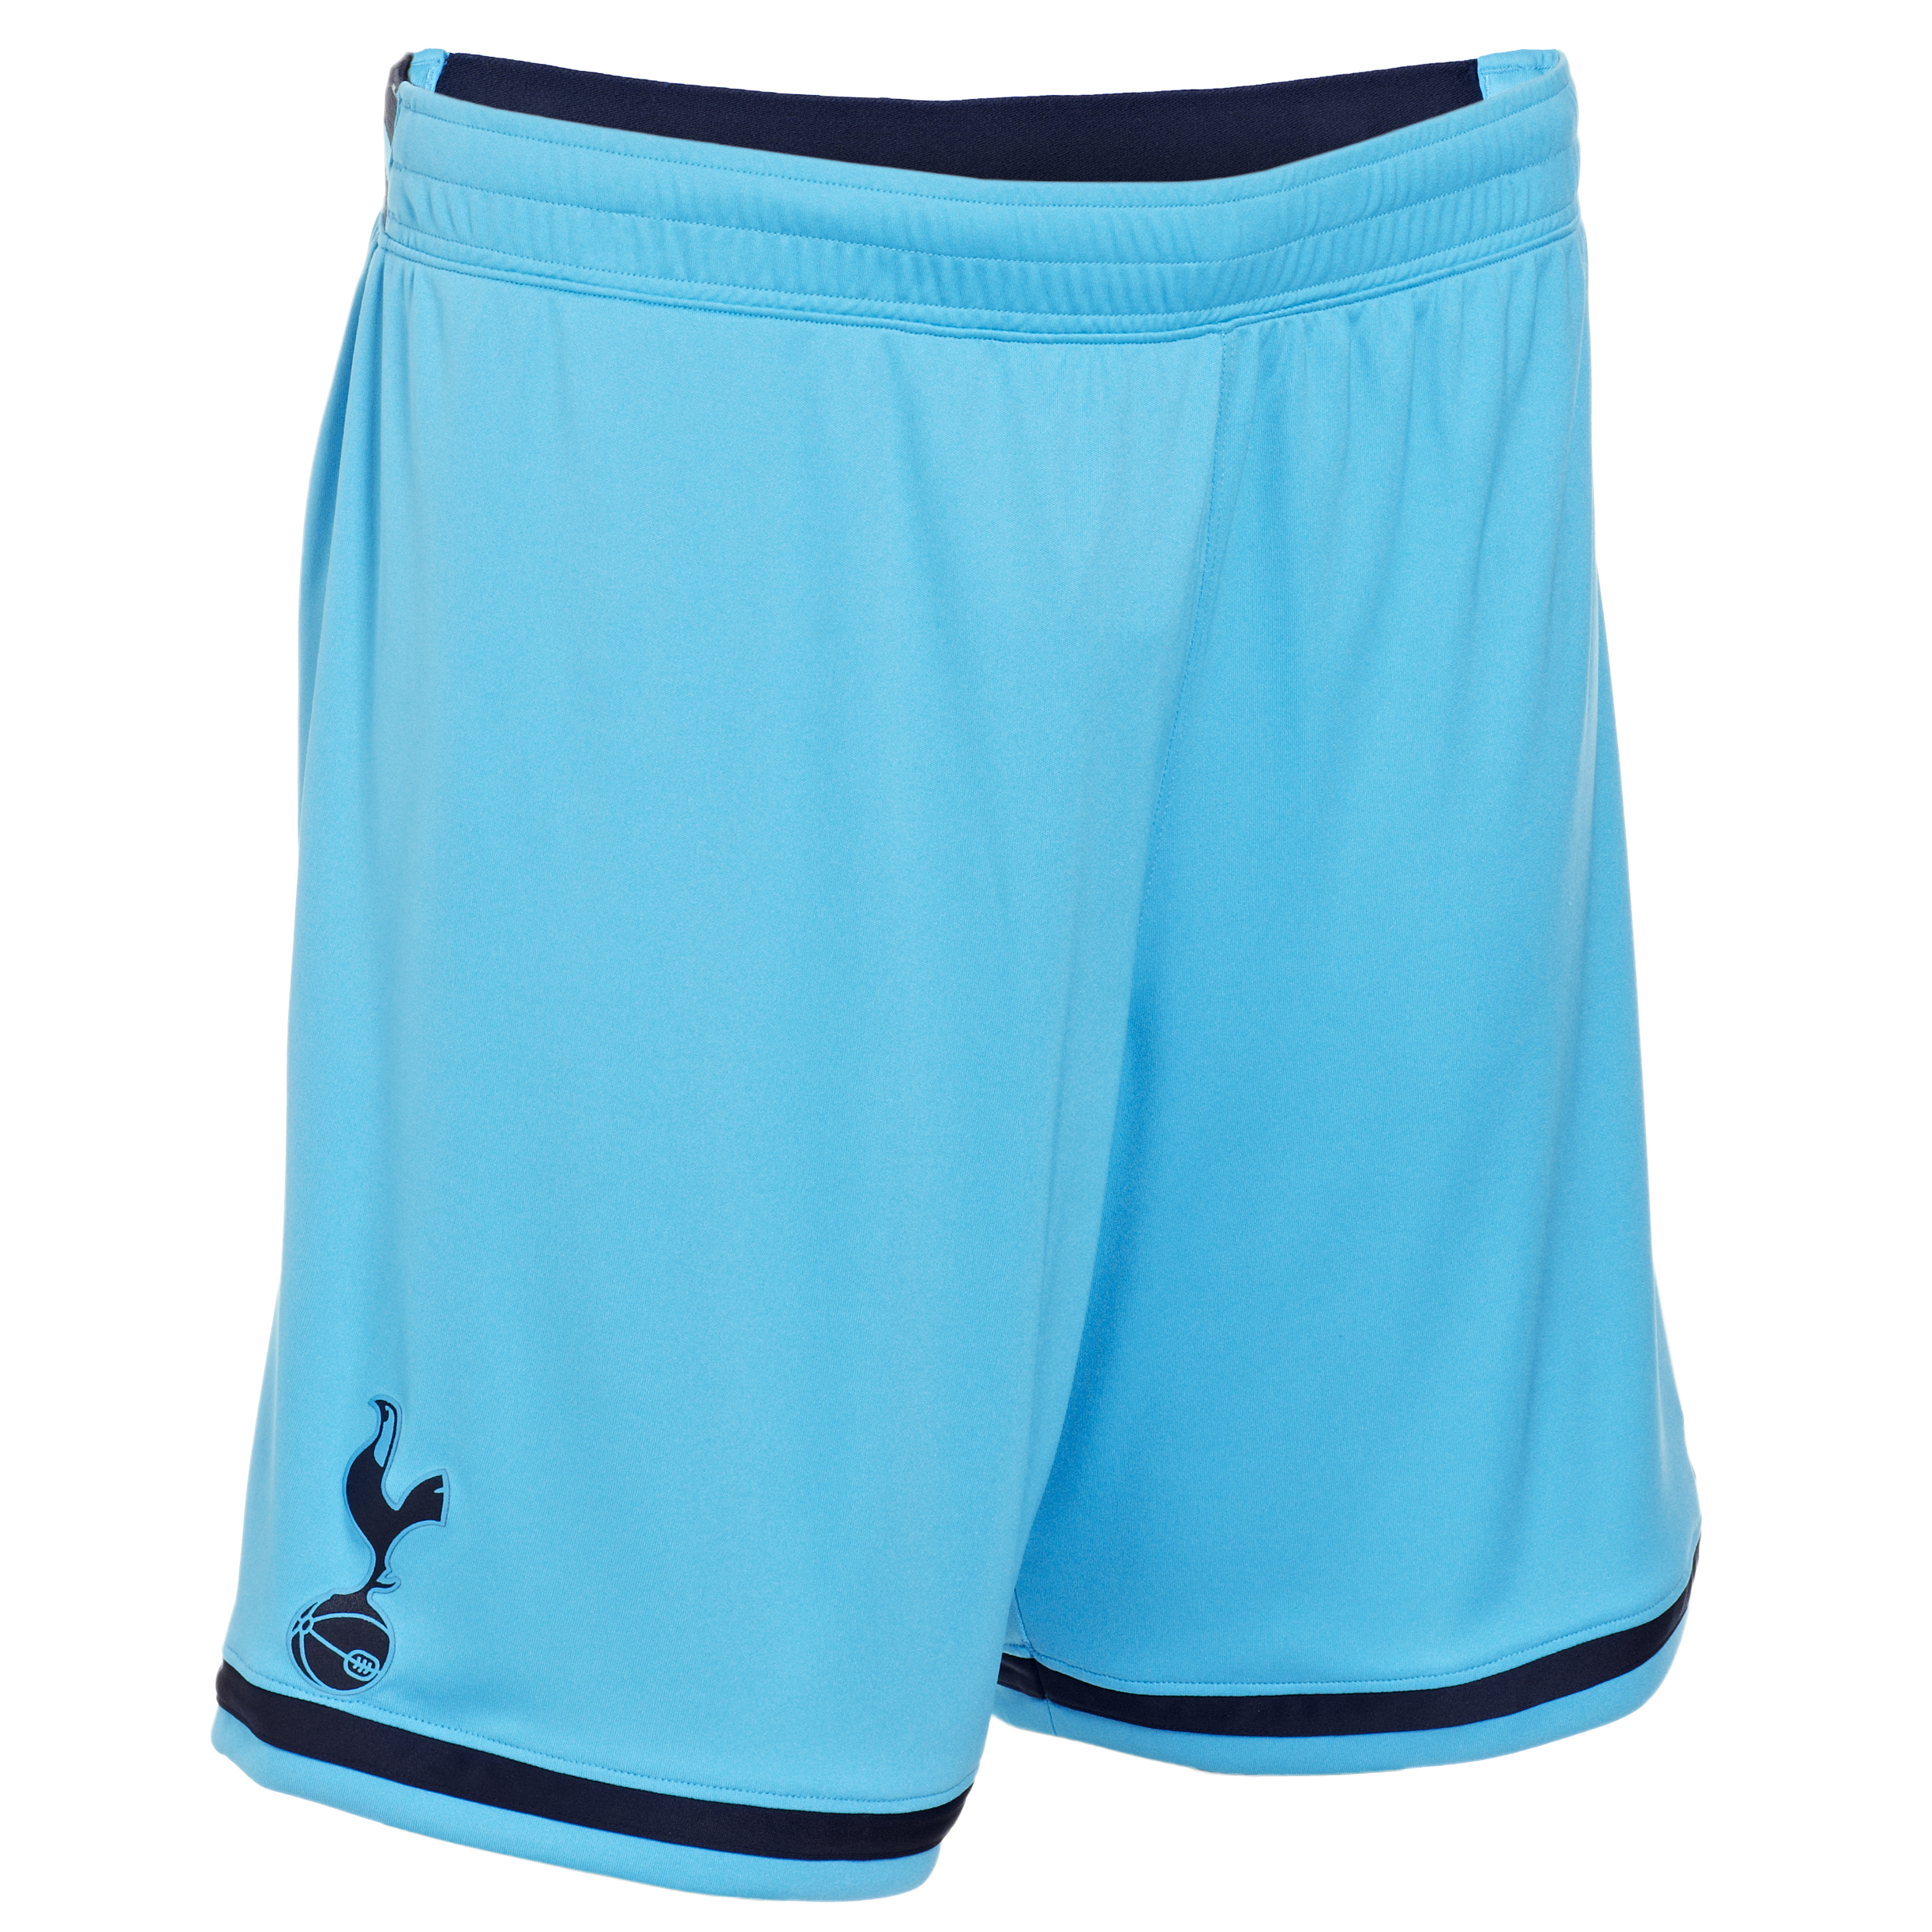 Tottenham Hotspur Away Shorts 2013/14